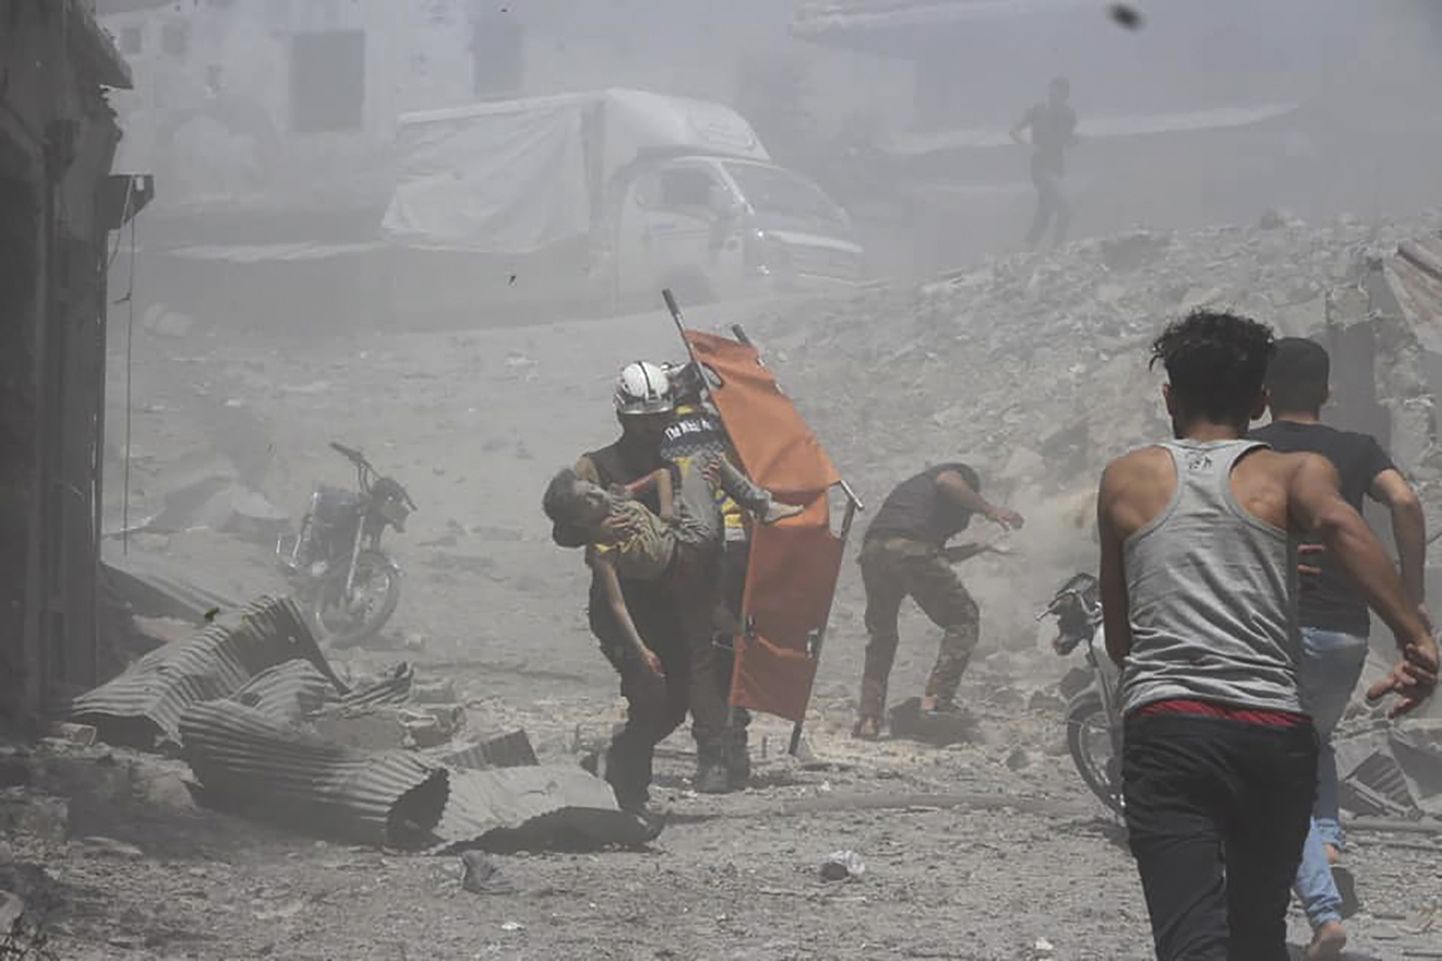 Süüria tsiviilkaitse foto näitab rühmituse töötajat kandmas Süüria valitsuse õhurünnakus Jisr al-Shughuri linnas vigastada saanud poissi.